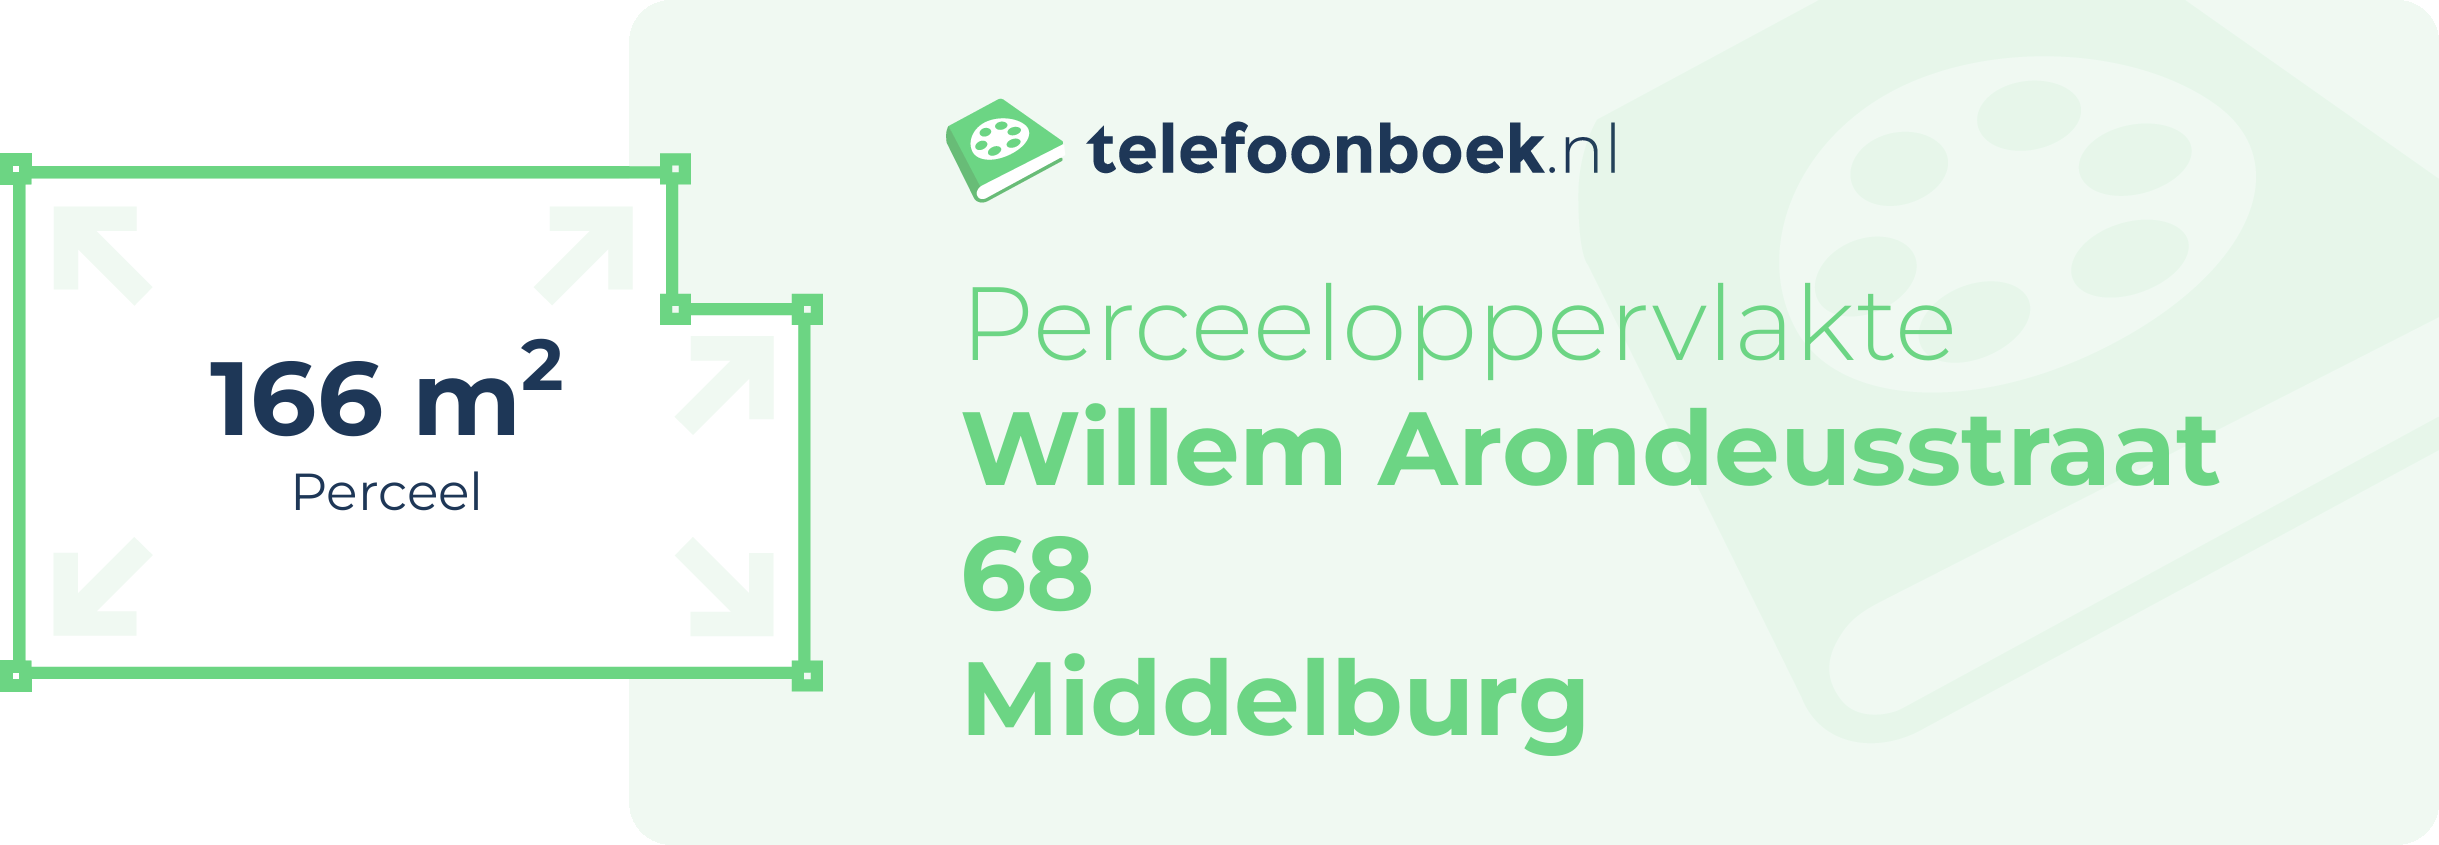 Perceeloppervlakte Willem Arondeusstraat 68 Middelburg